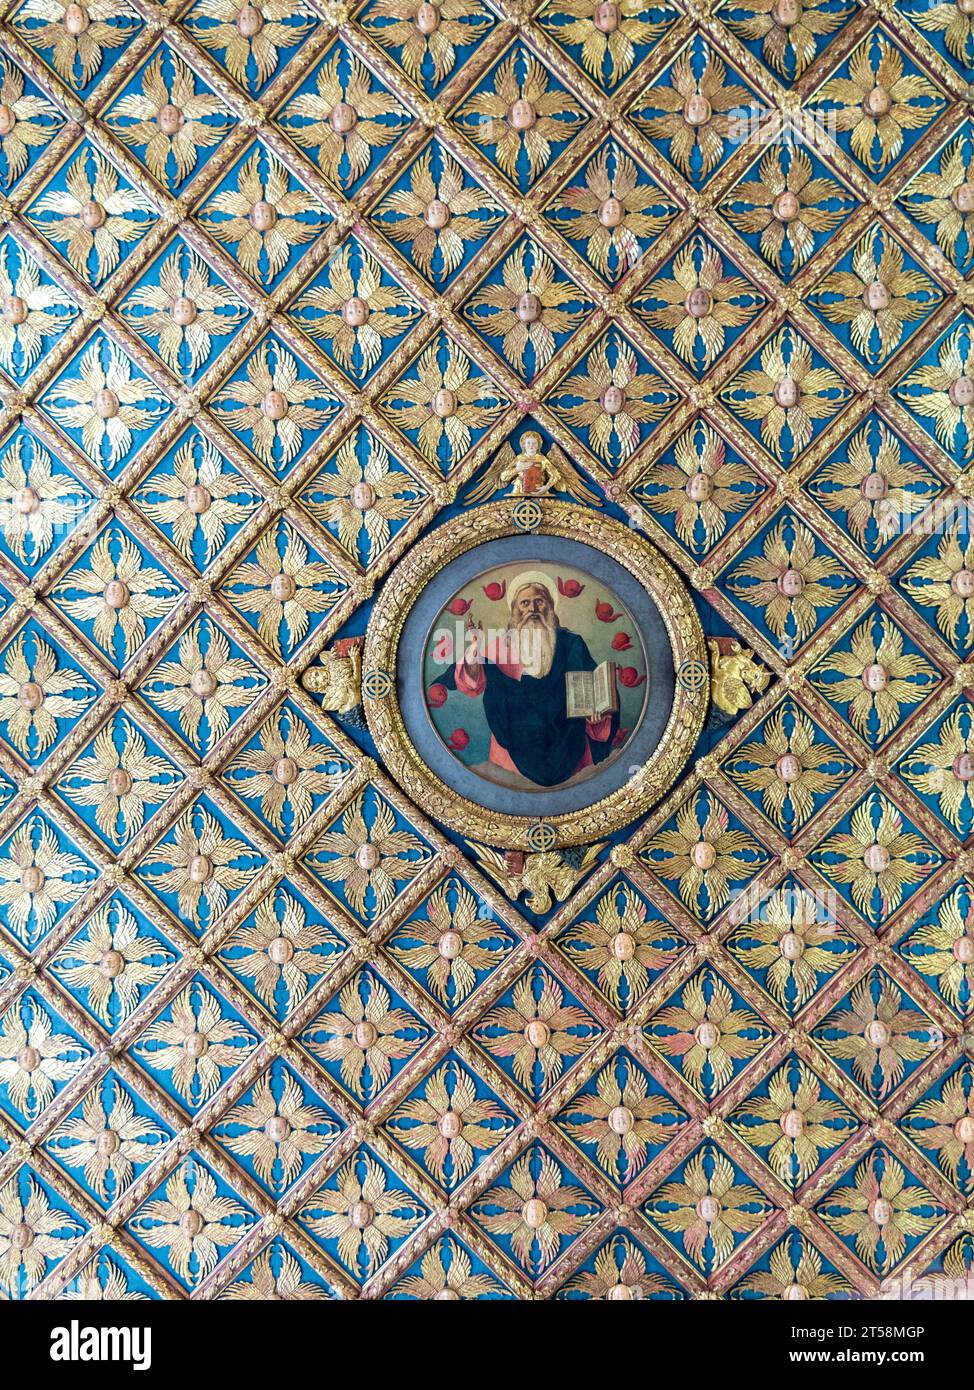 Sezione del soffitto riccamente decorata. Al centro un'immagine di un santo che tiene la Bibbia. Pattern ripetuti a 360°. Foto Stock